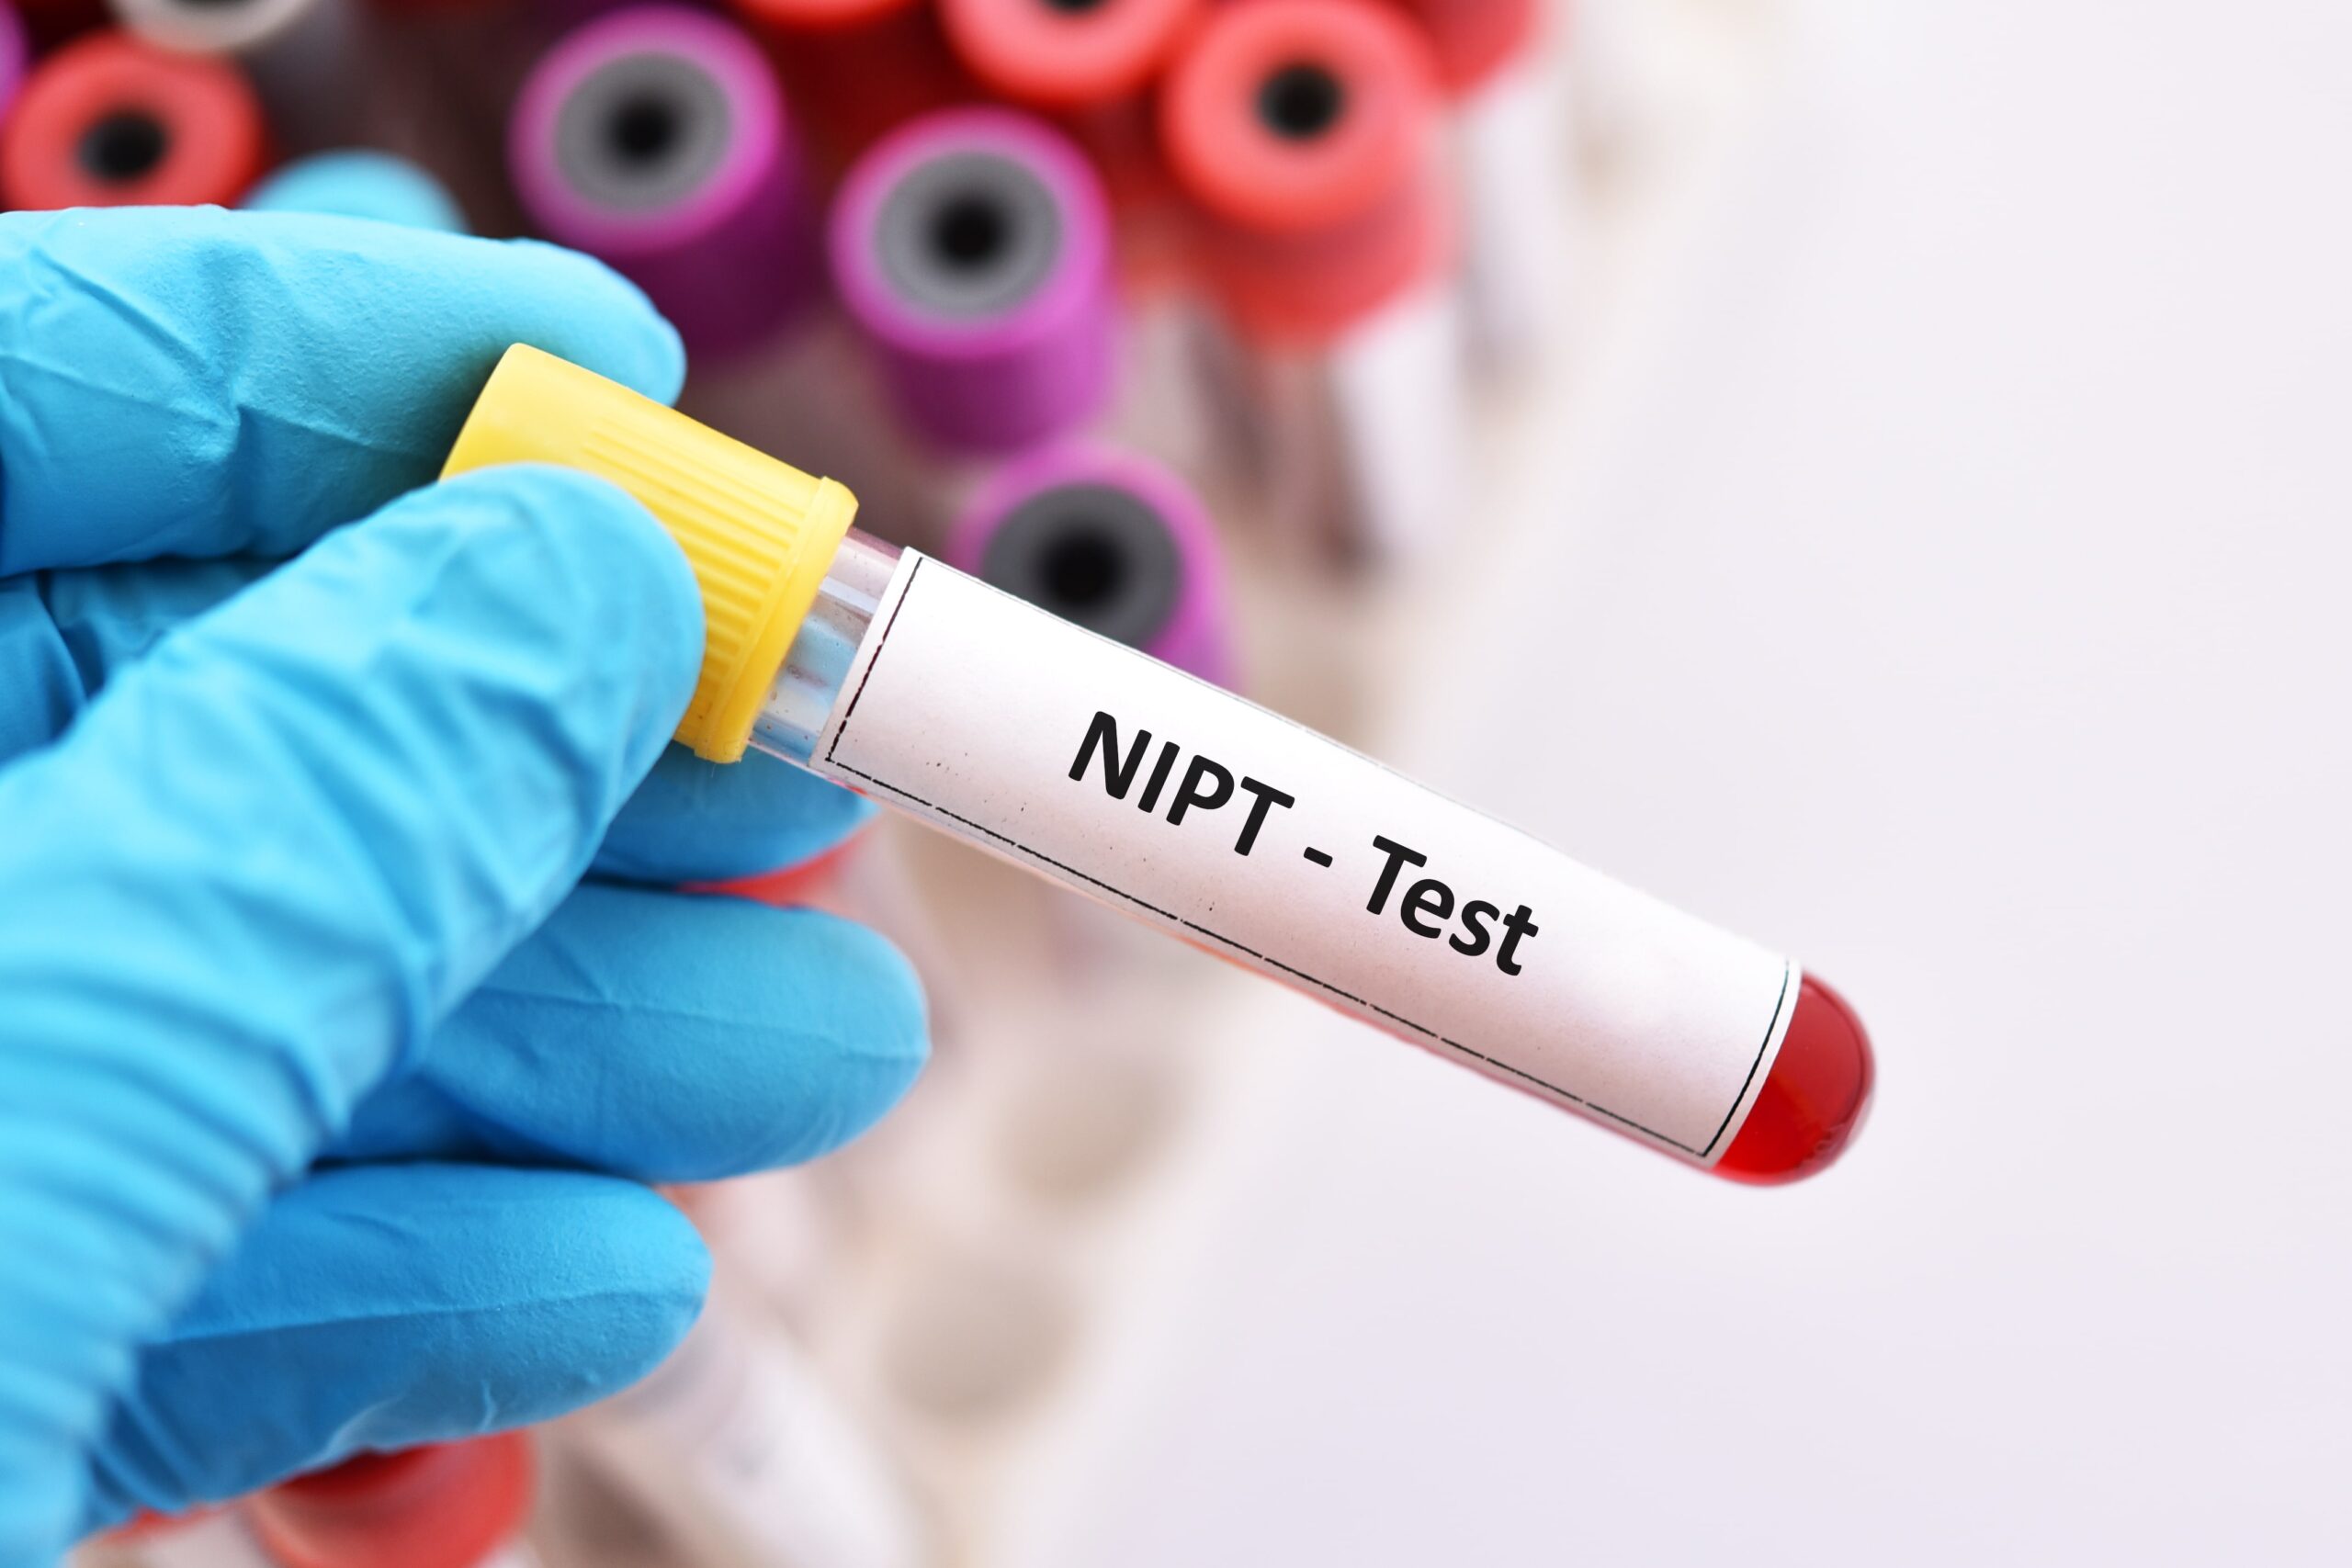 May 2022: NIPT (DPNI) tests